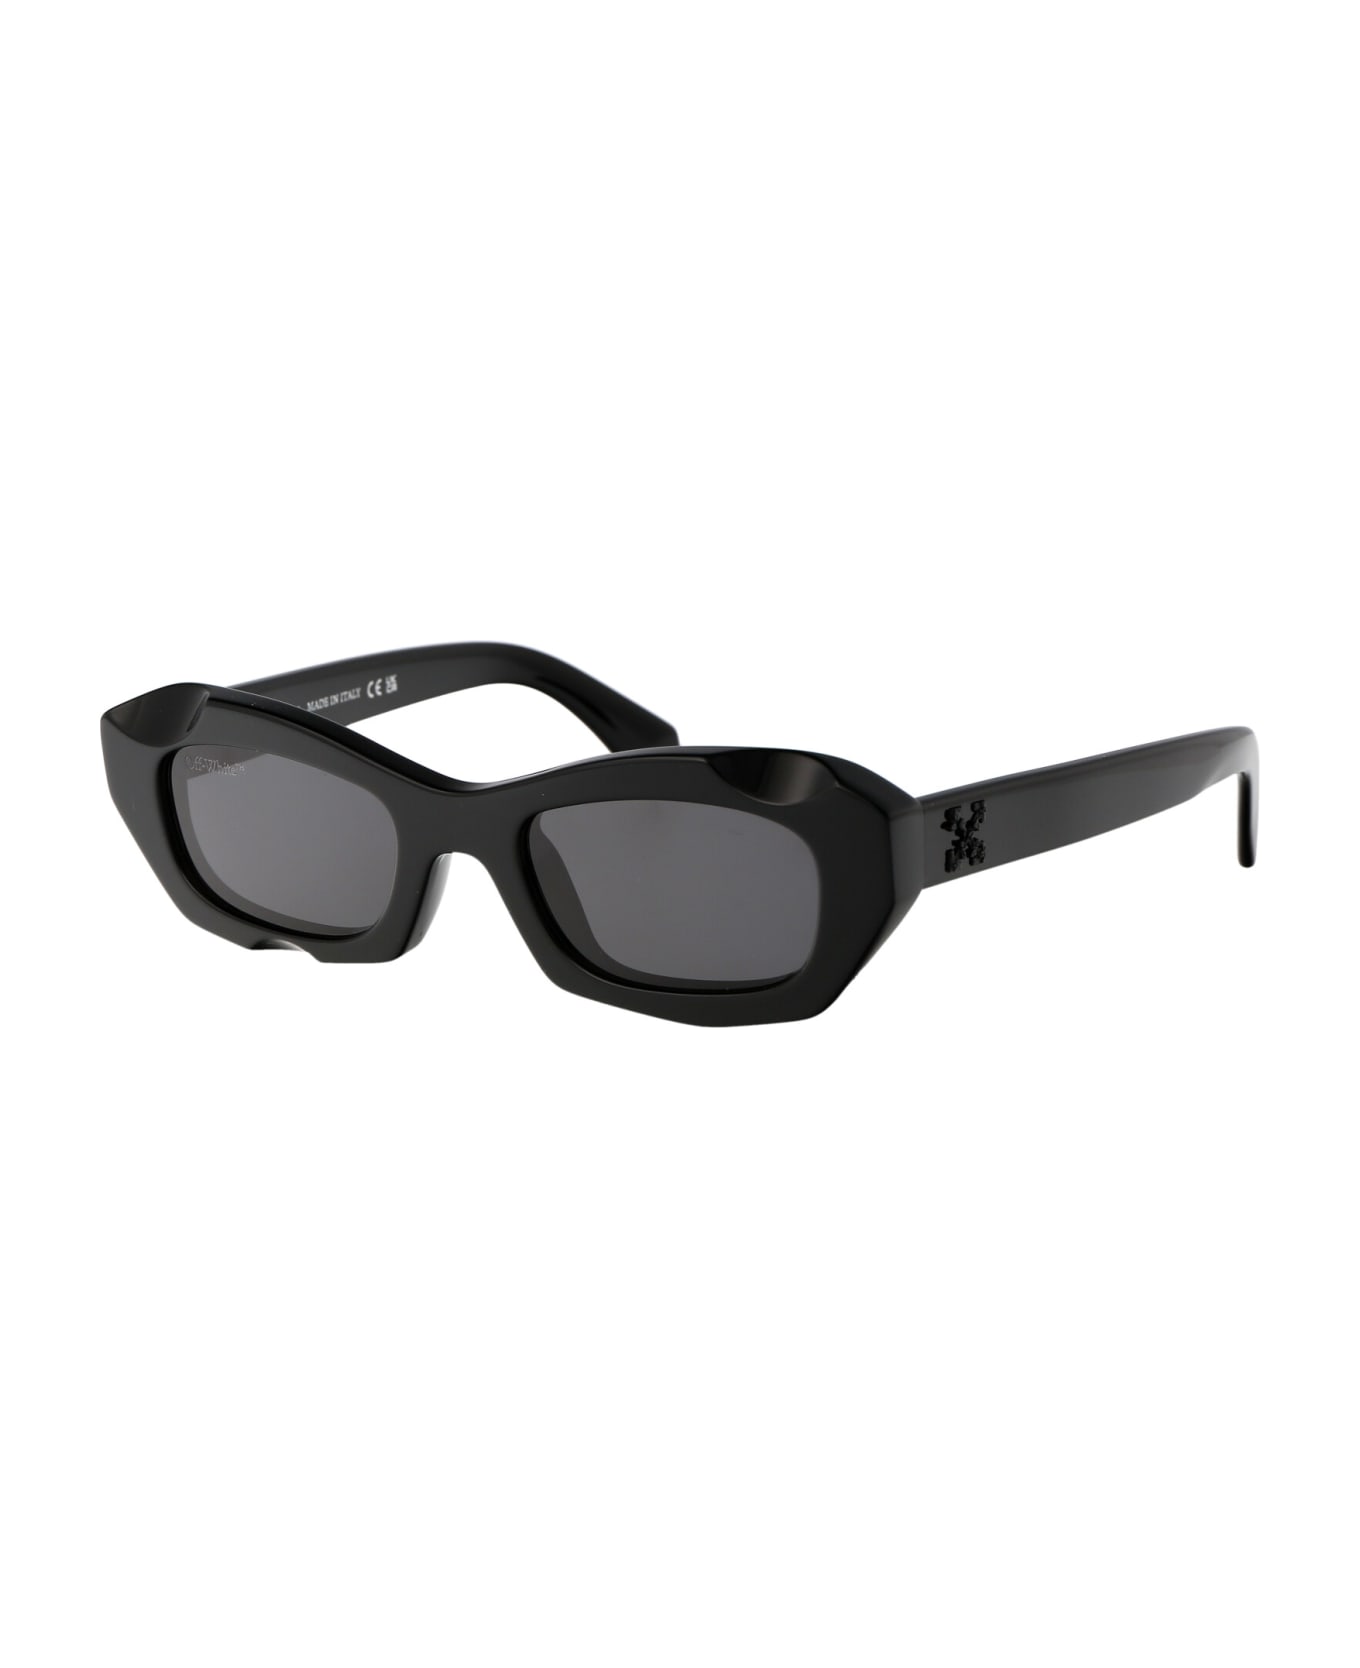 Off-White Venezia Sunglasses - 1007 BLACK サングラス